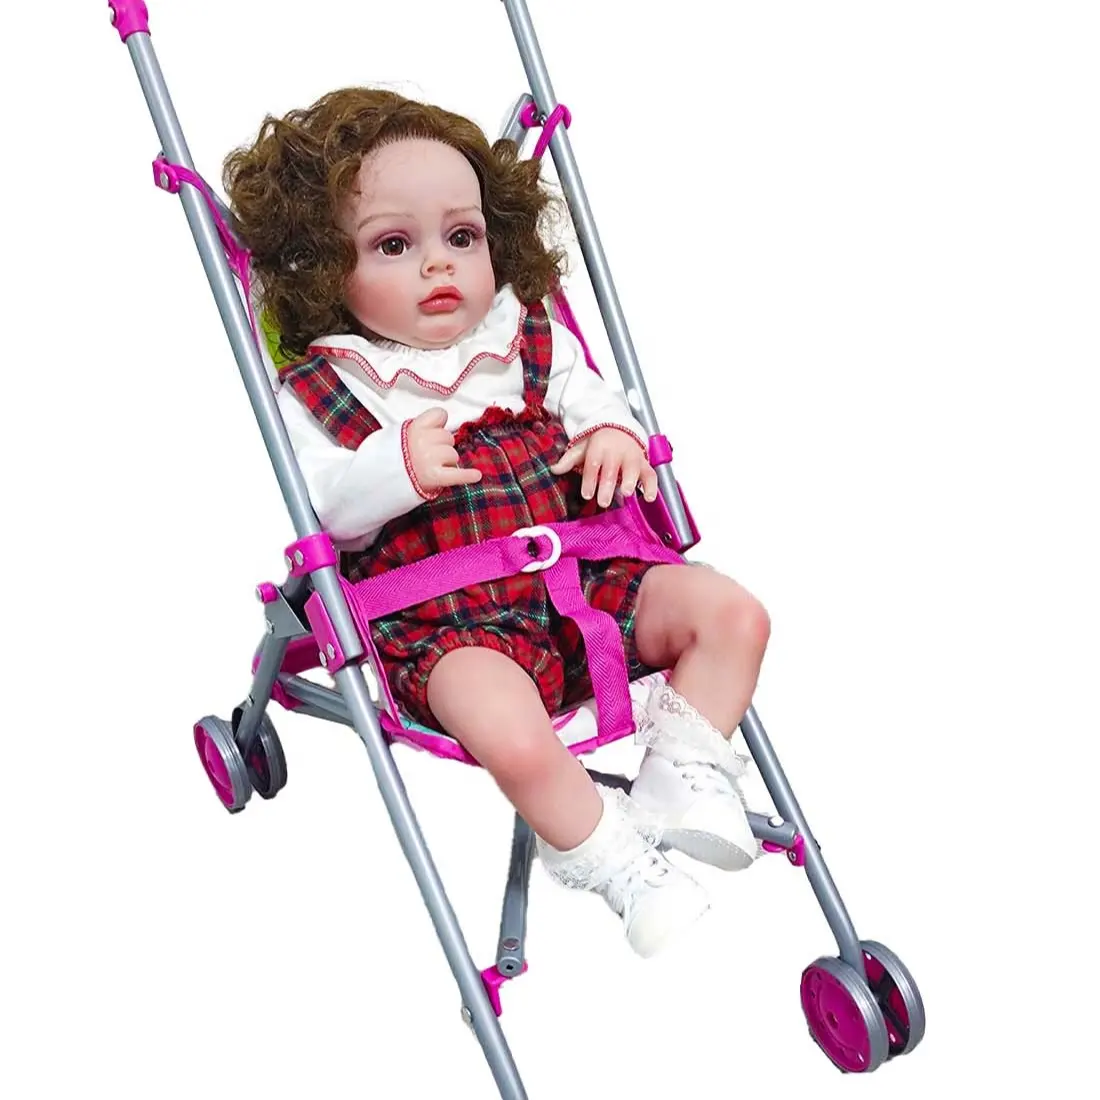 Precio bajo Pelo Largo vivo Barbies modelo de algodón de alta calidad muñeca cochecito juguete niña muñecas con accesorios